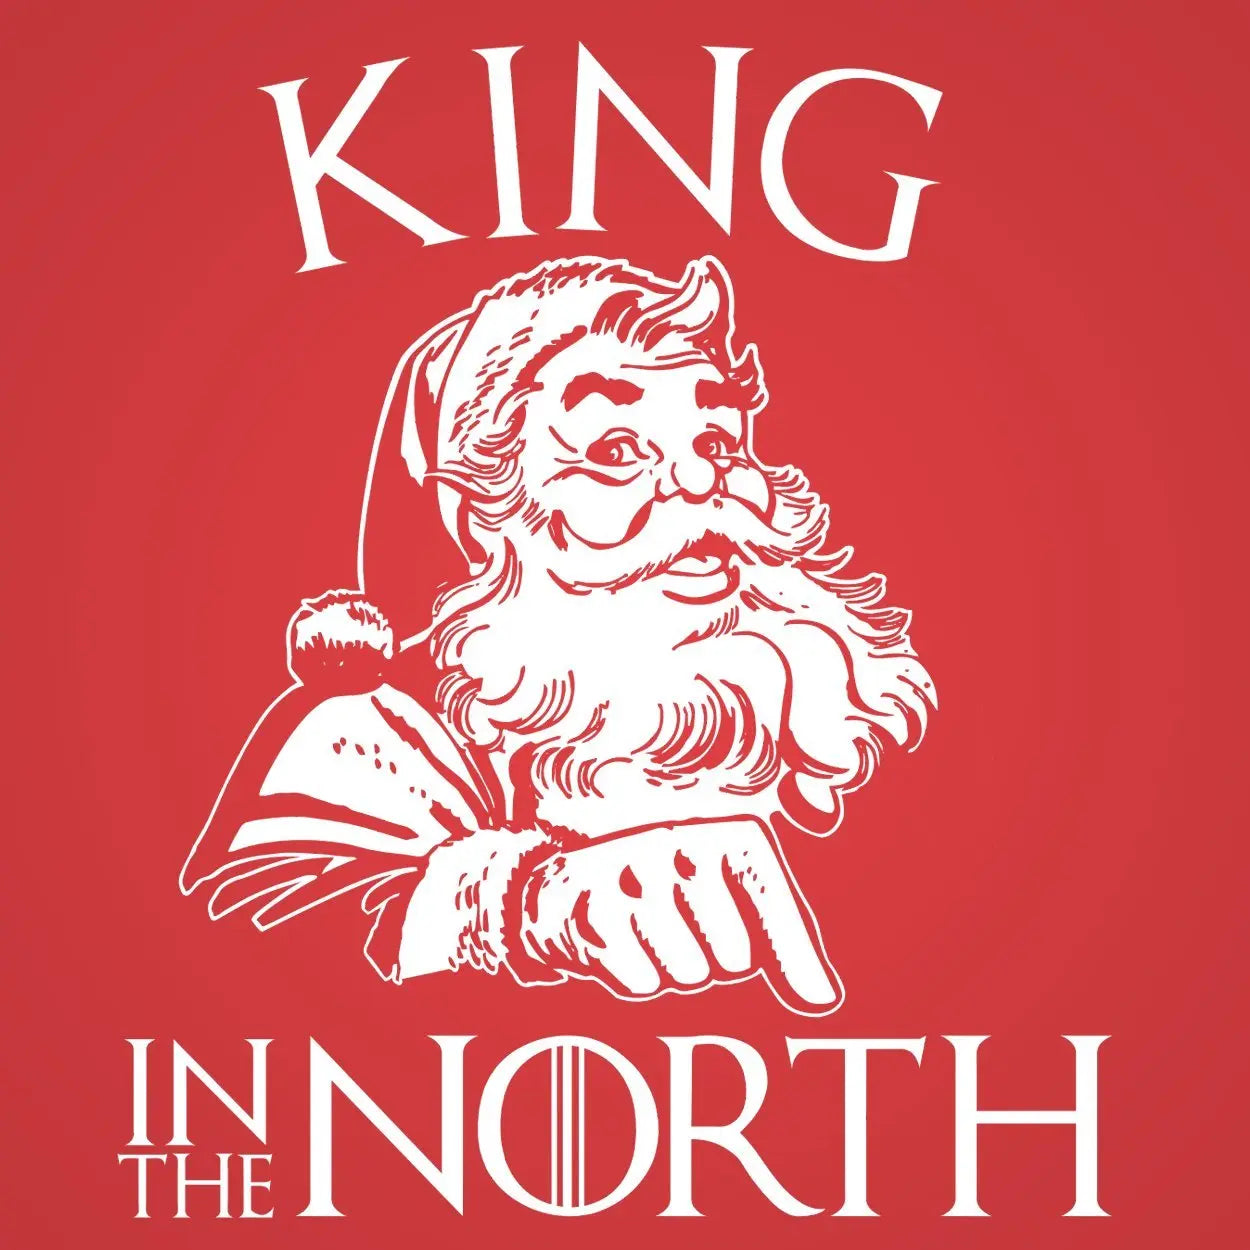 King In The North Santa Claus Tshirt - Donkey Tees